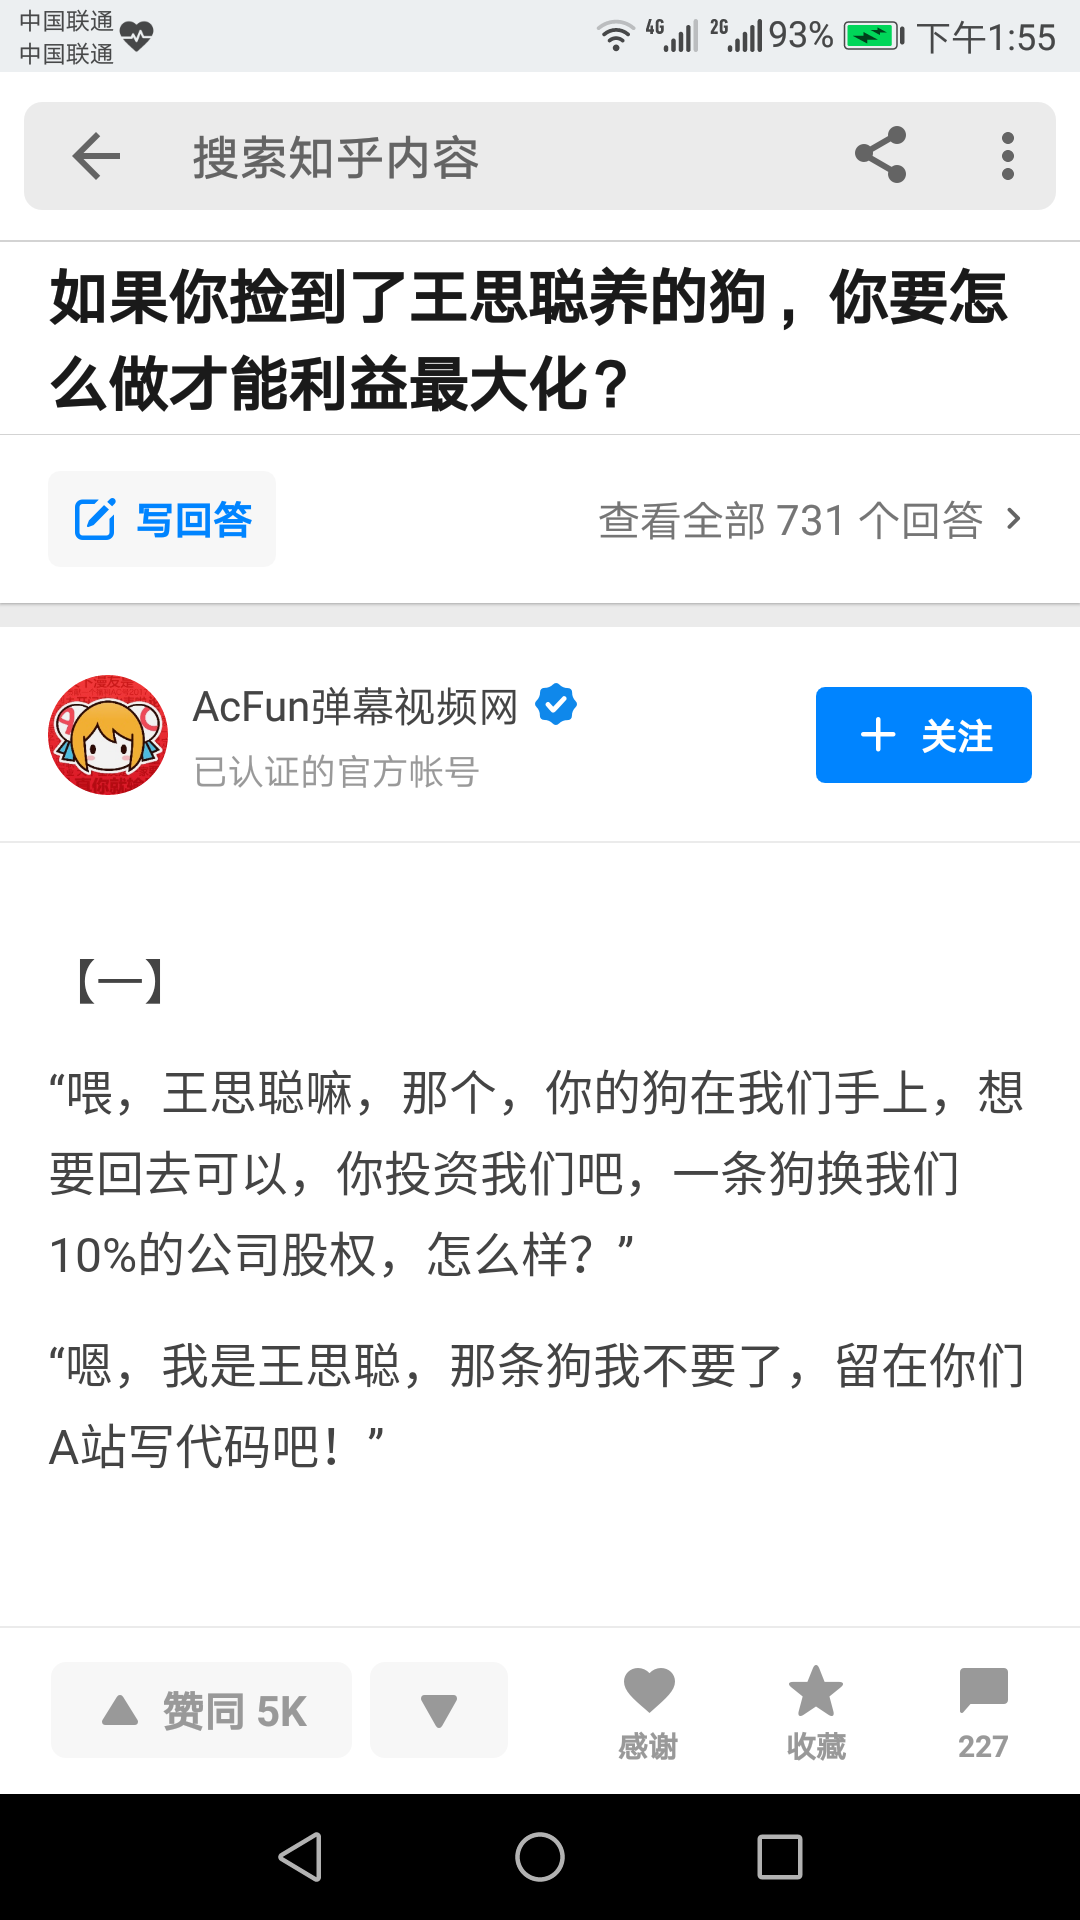 如何看待著名弹幕网站 AcFun 倒闭?